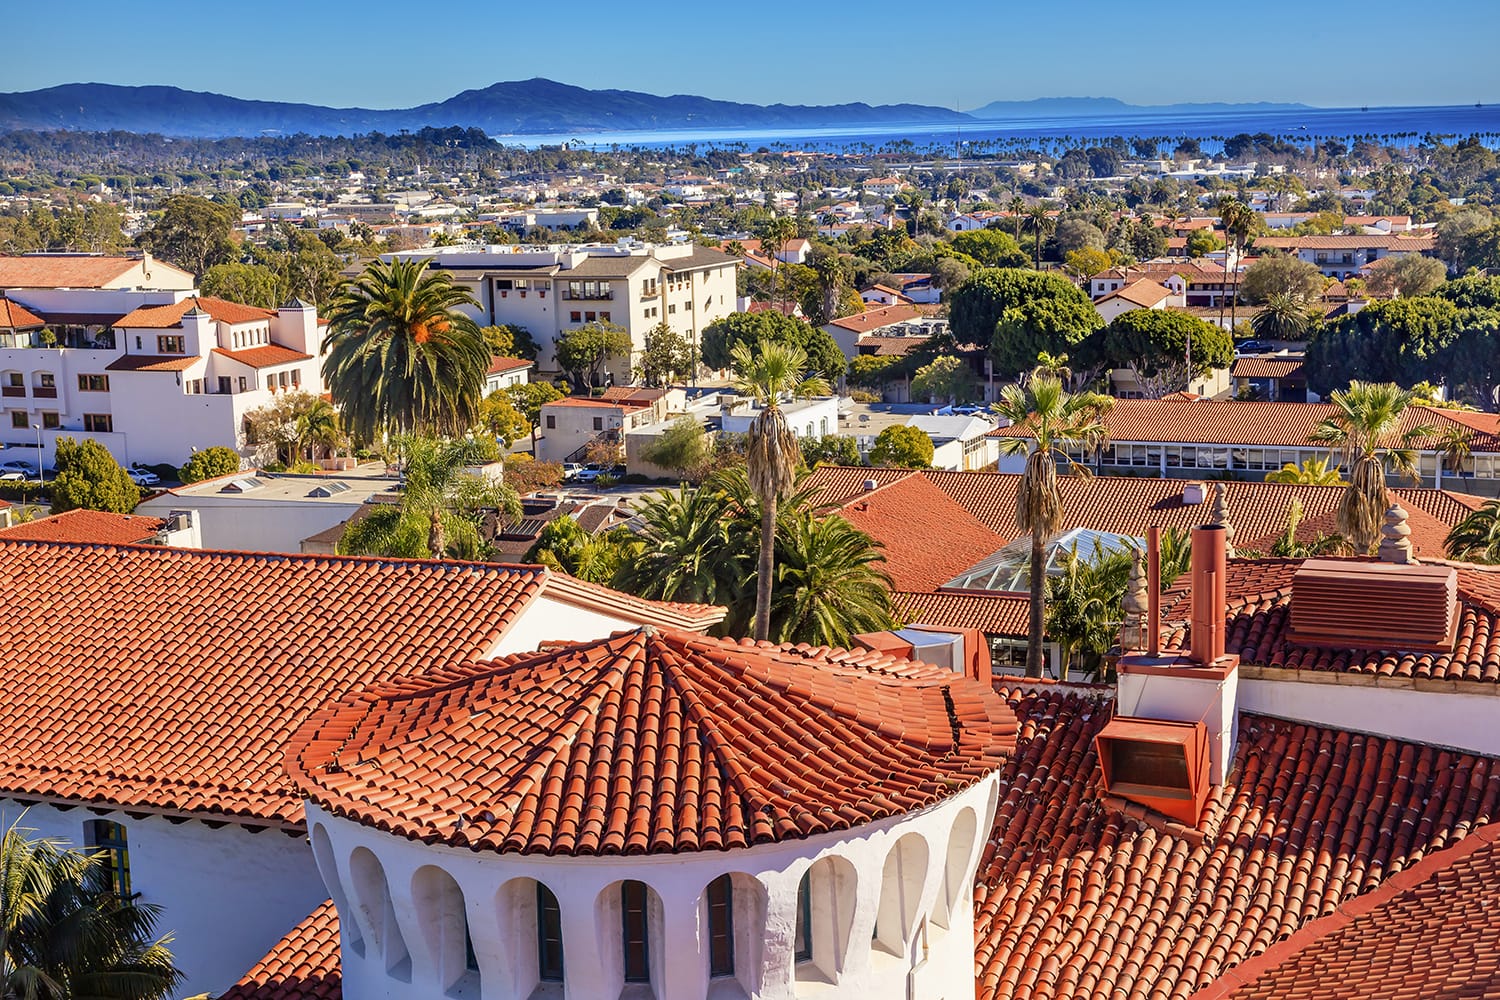 Rooftop view over Santa Barbara, California, USA